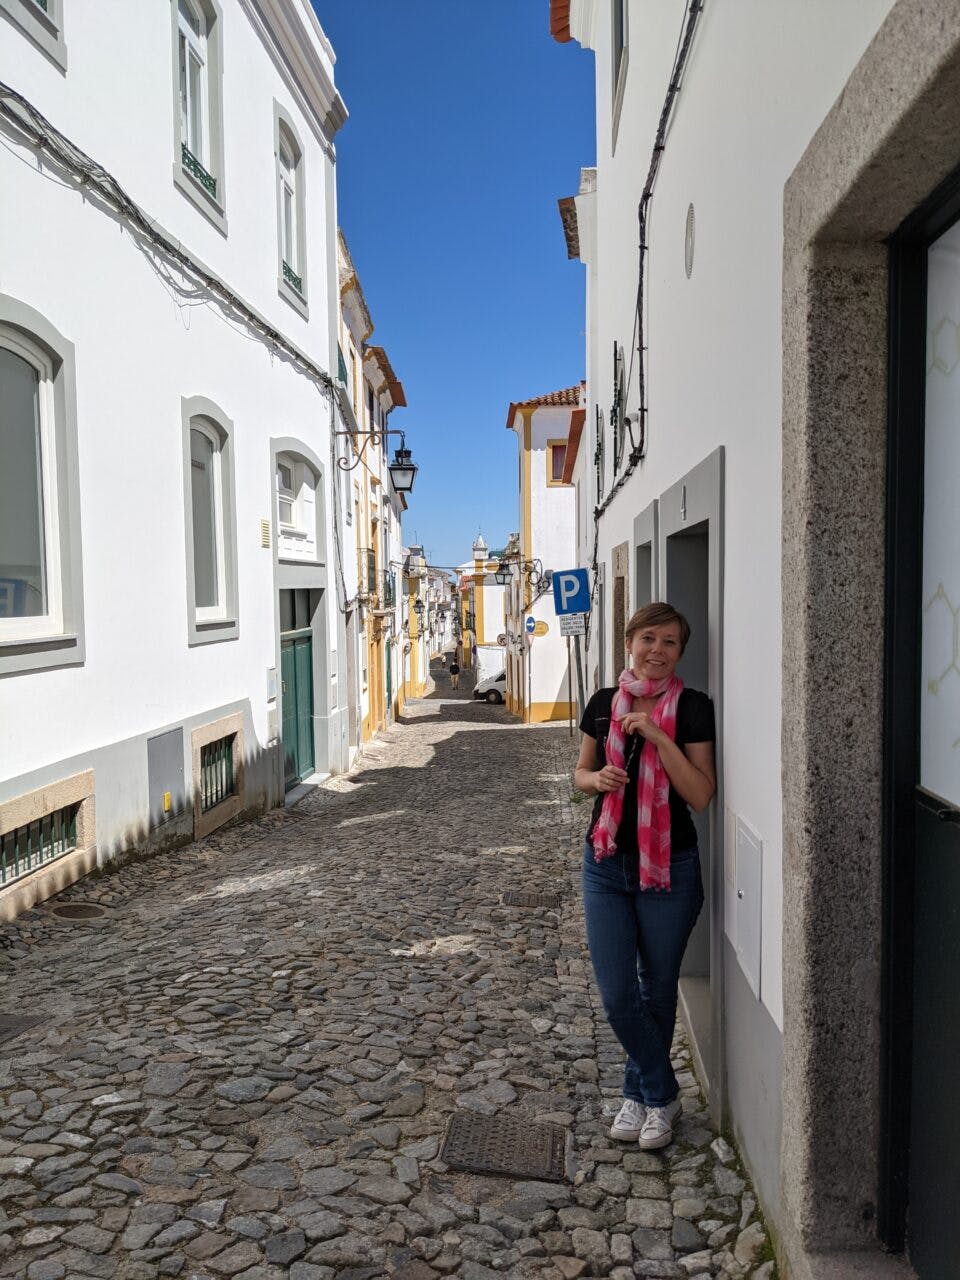 Dziewczyna stoi na ulicy w Evorze, w Portugalii. Opiera się o budynek.